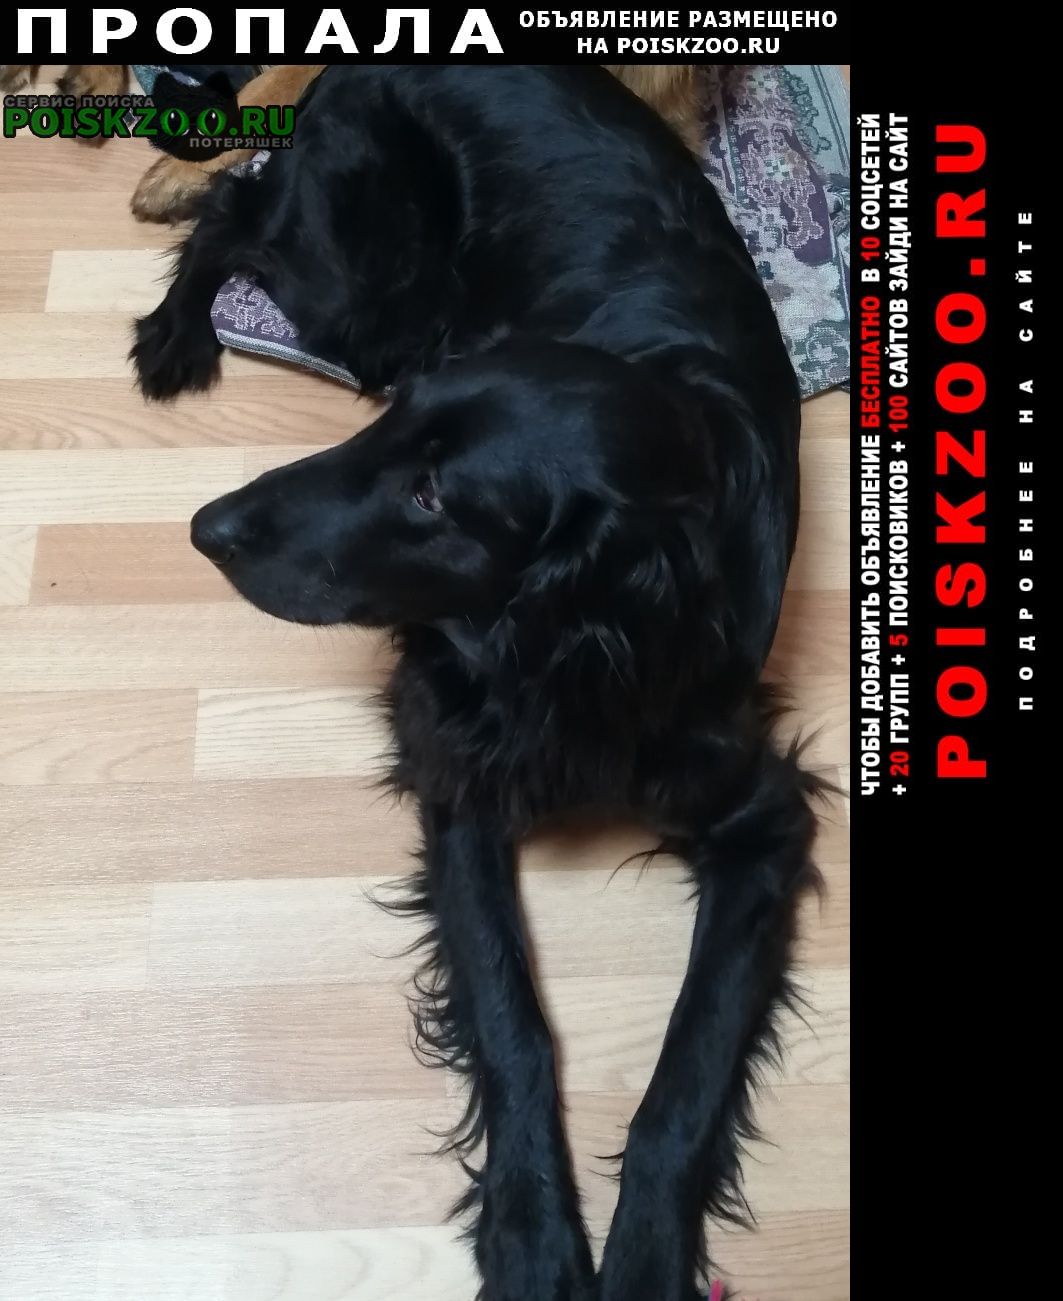 Пропала собака кобель флэт, чёрный, крупный, ласковый Новосибирск